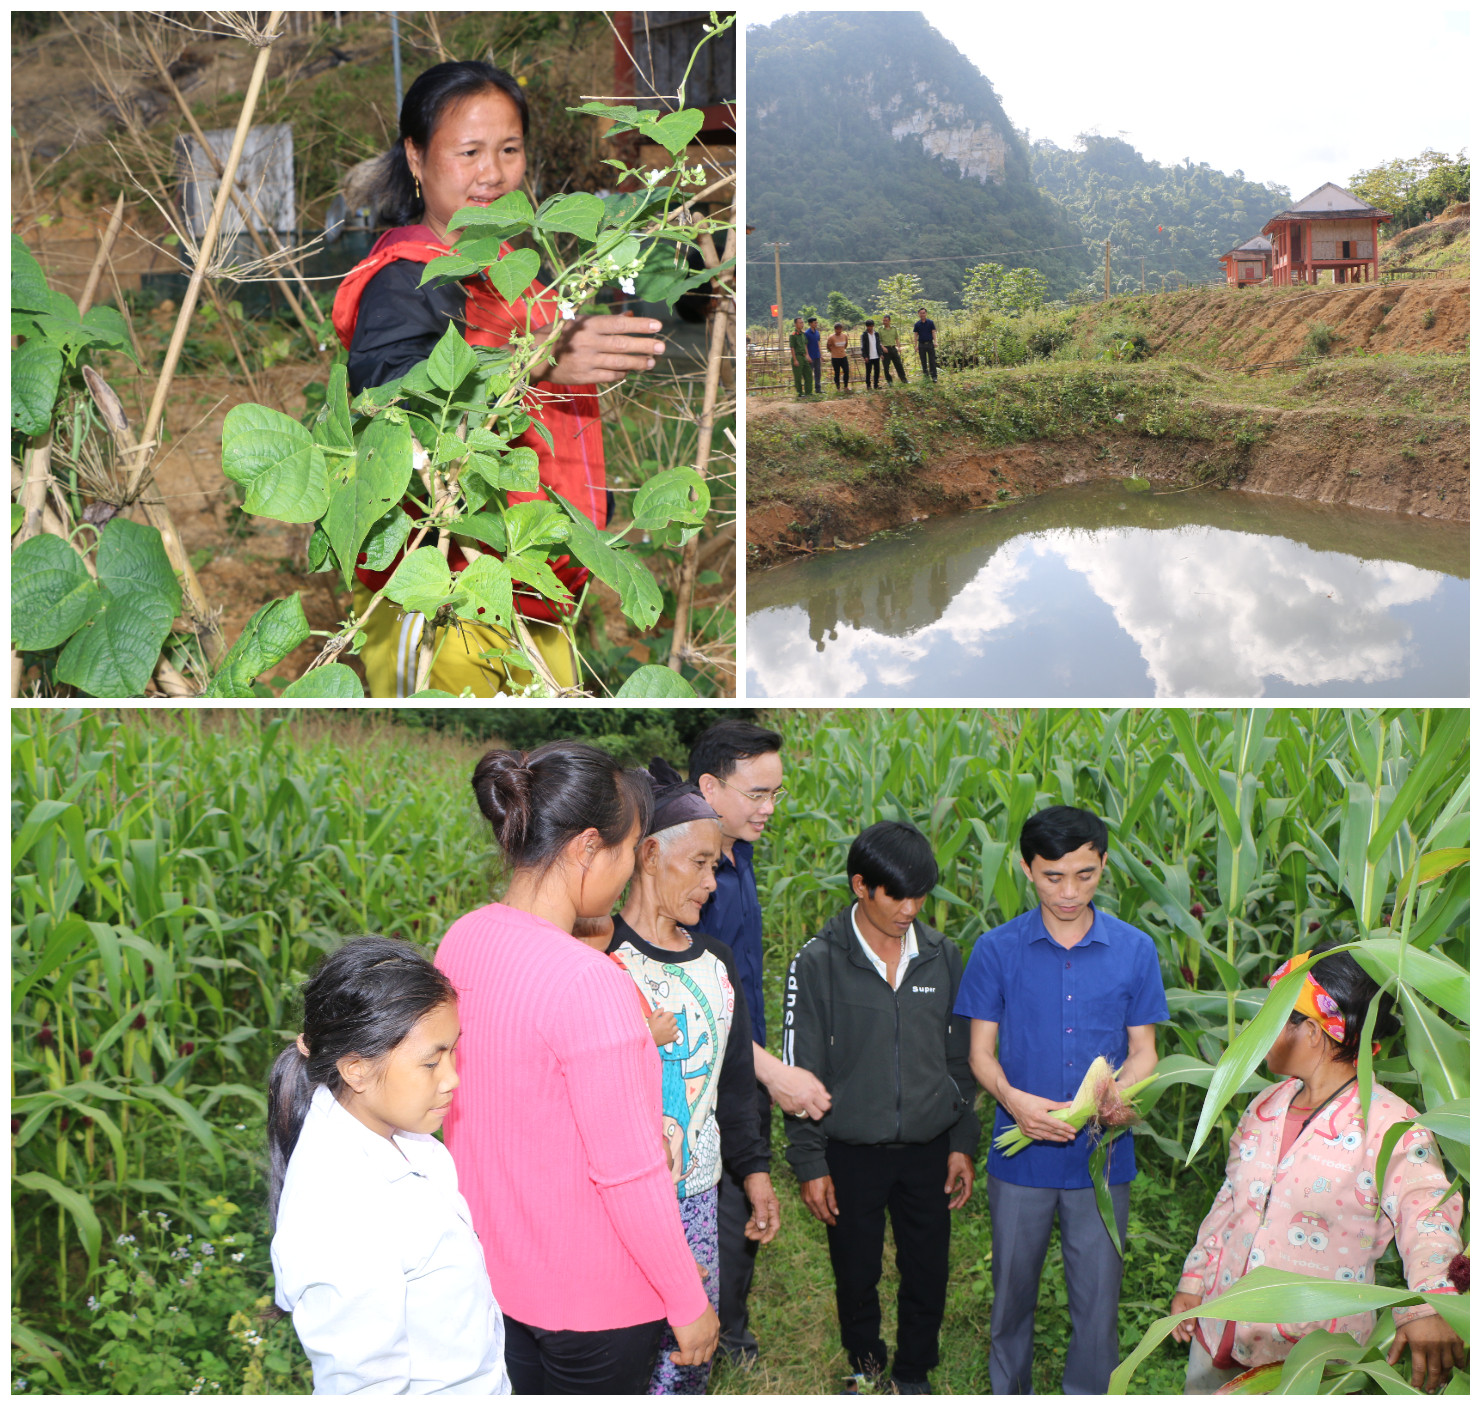 Người dân Đan Lai ở khu tái định cư mới đã biết trồng rau, đào ao thả cá, trồng ngô...Ảnh: K.L